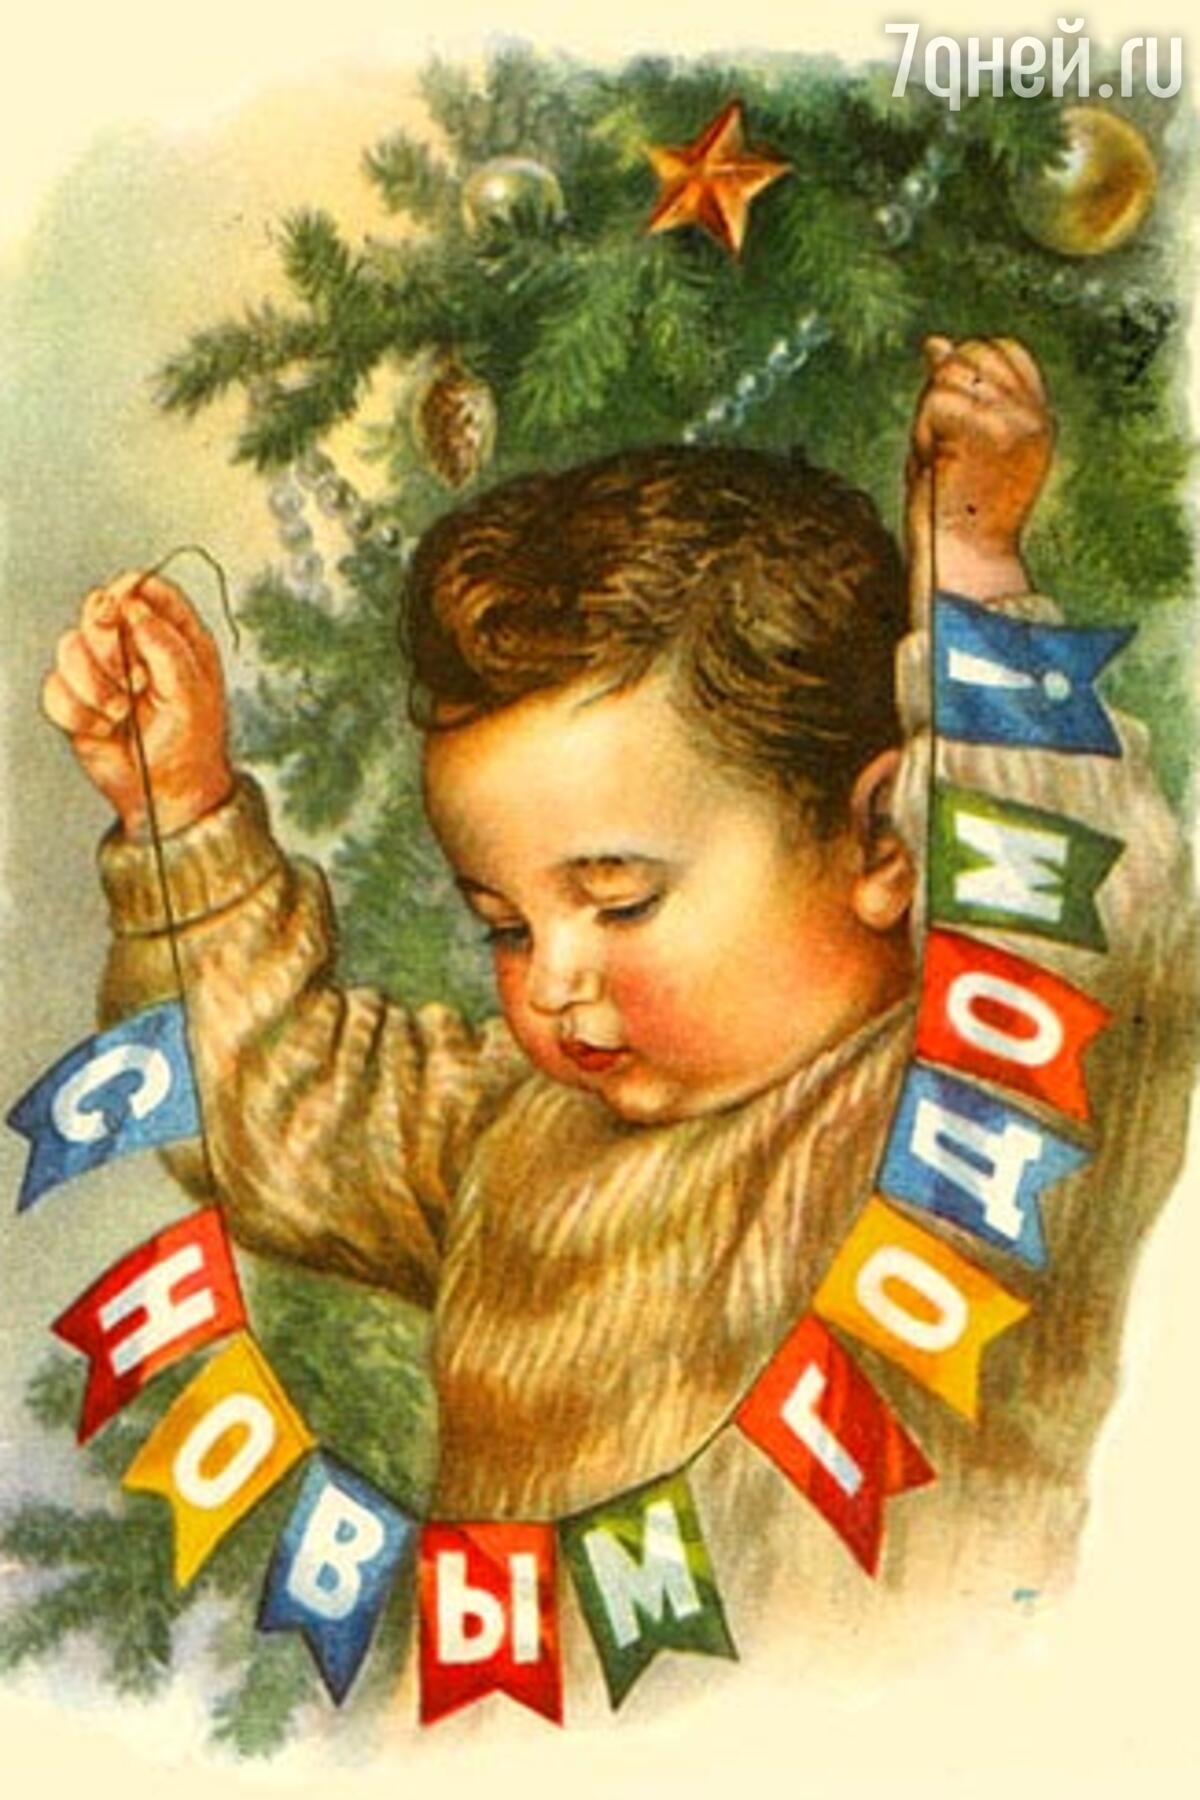 Новогодний Курган оформят, используя идеи с открыток времен СССР. Фото